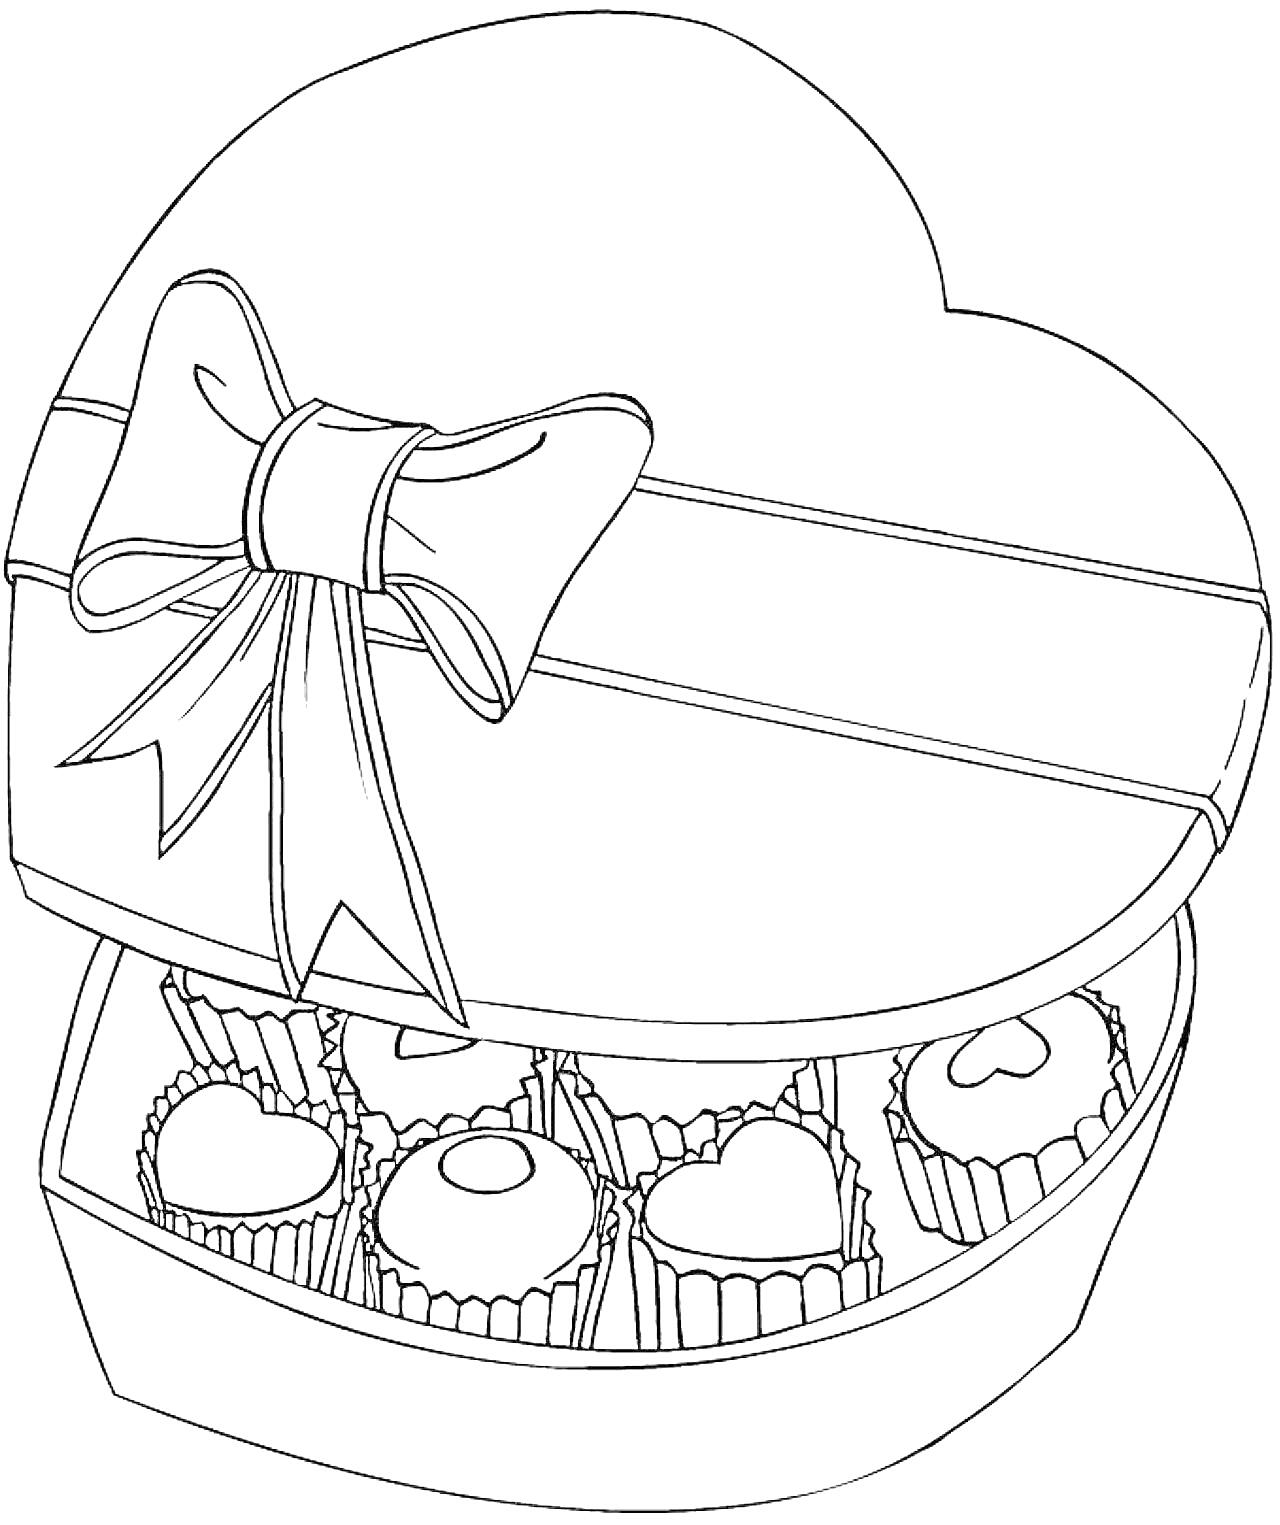 Коробка конфет в форме сердца с бантом и различными конфетами внутри